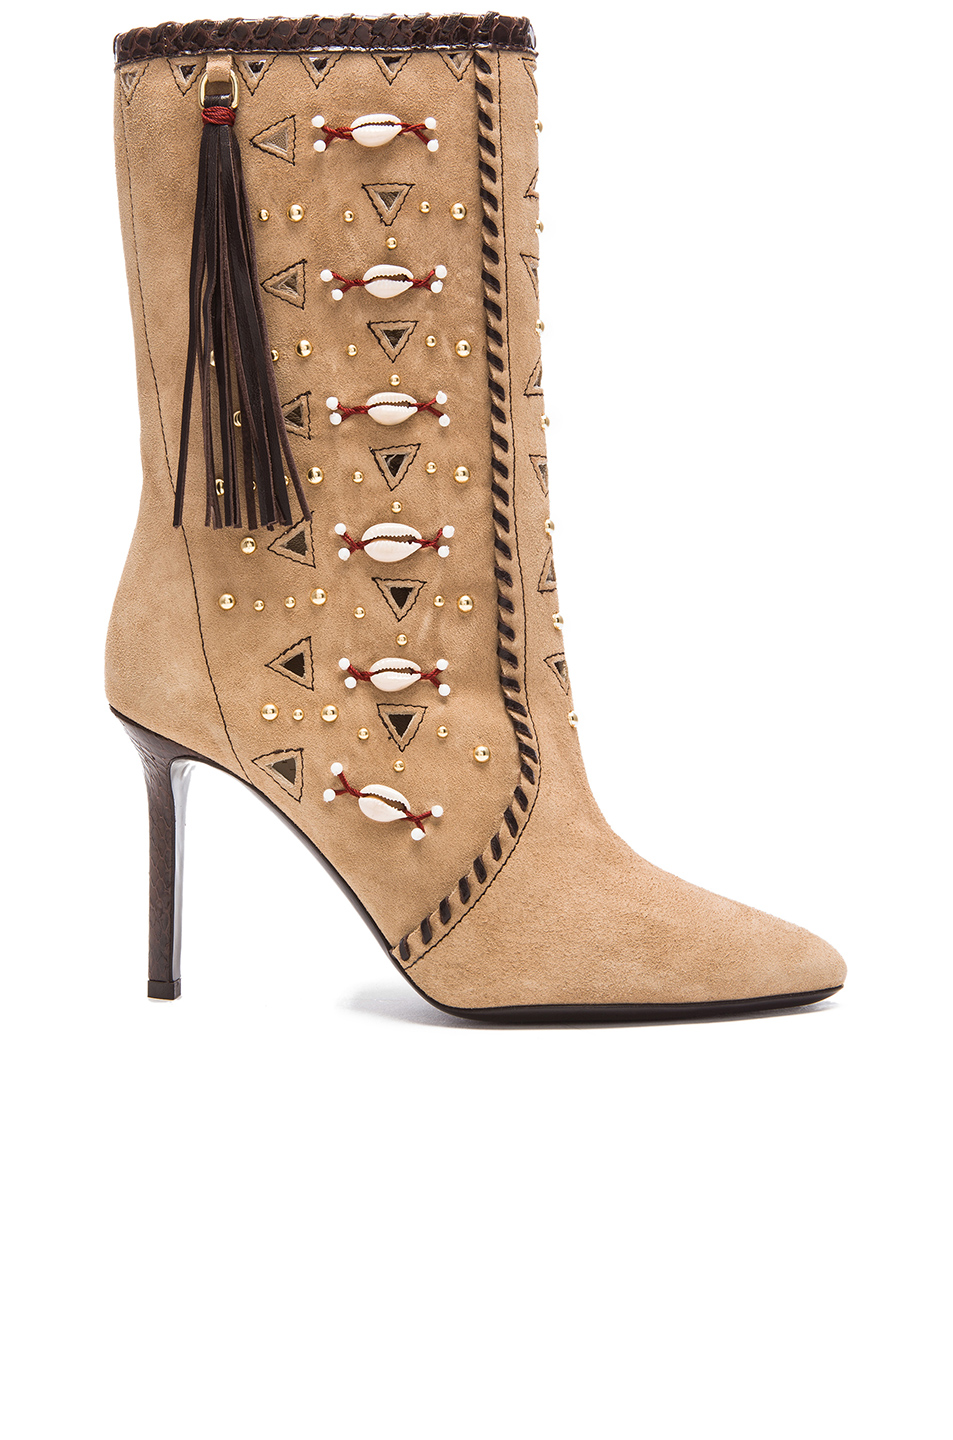 Tamara Mellon Bohemia Stucco/TDM Suede Boots 90MM Heels $1,295 NEW